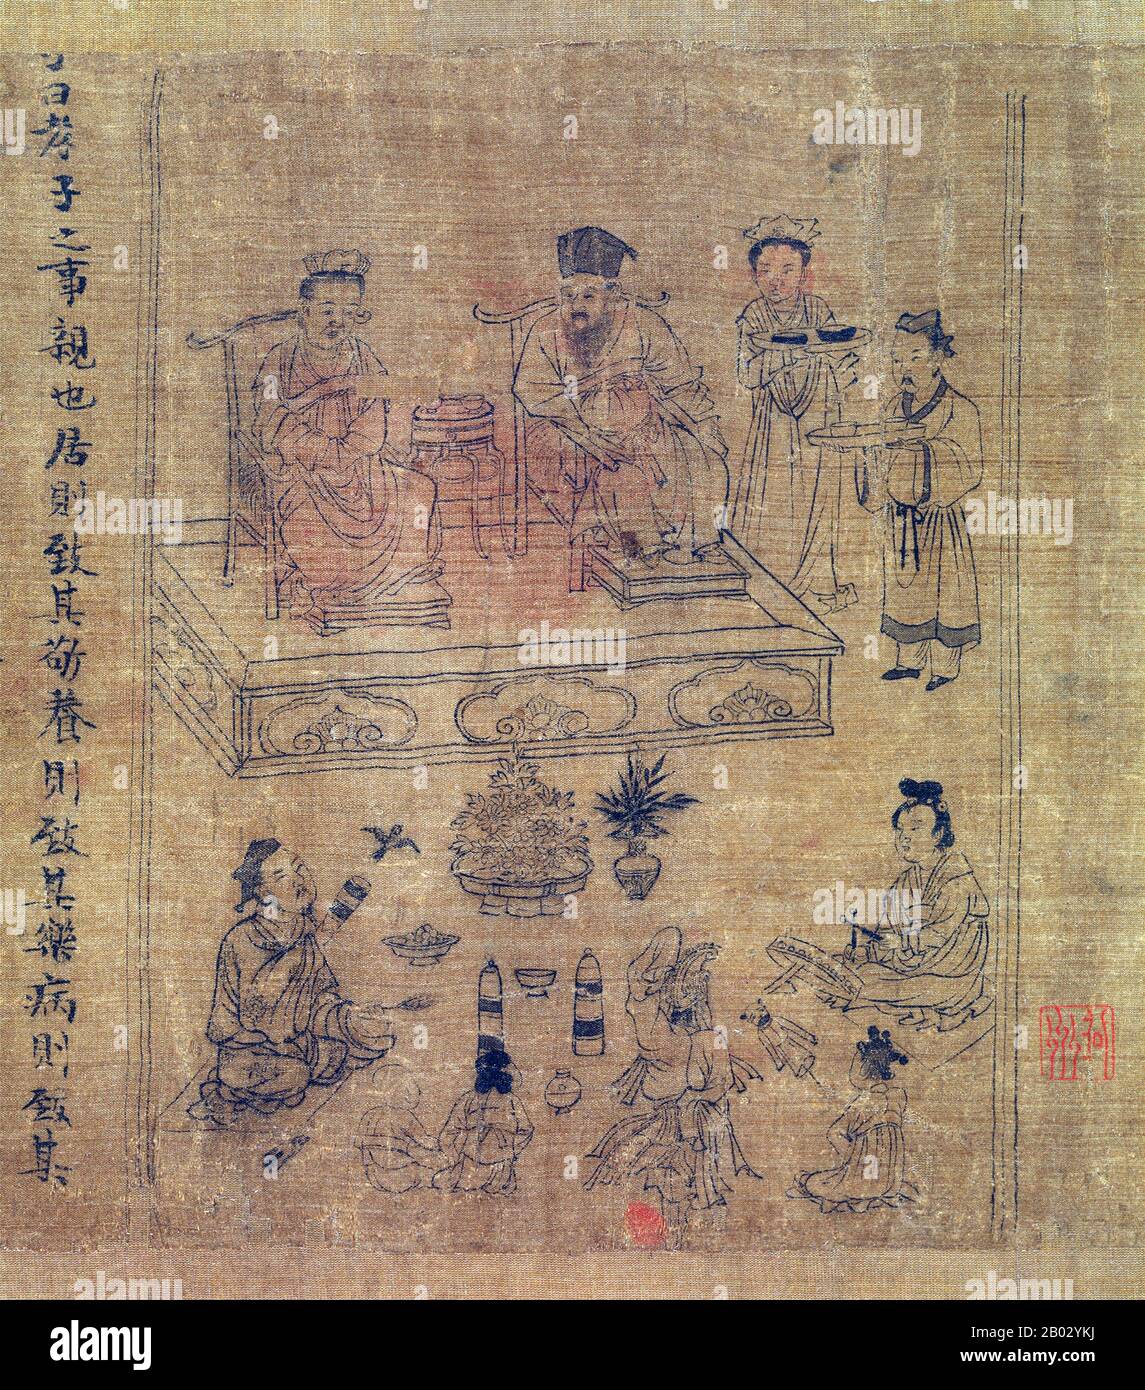 Li Gonglin, Stilname Boshi, Pseudonym Longmian Jushi (Haushalter des Schlafenden Drachens), war ein chinesischer Maler, Beamter und Archäologe in der nördlichen Song-Dynastie. Li Gonglin, geboren in einem wissenschaftlichen Haus in der Nähe der heutigen Stadt Lu'an, bestand mit 21 die höchsten Beamtenprüfungen und wurde Beamter. Er wurde berühmt für seine Pferdebilder, dann wandte er sich der buddhistischen und daoistischen religiösen Malerei sowie Porträts und Landschaften zu. Sein Malstil wurde dem Stil von Gu Kaizhi und Wu Daozi zugeschrieben. Stockfoto